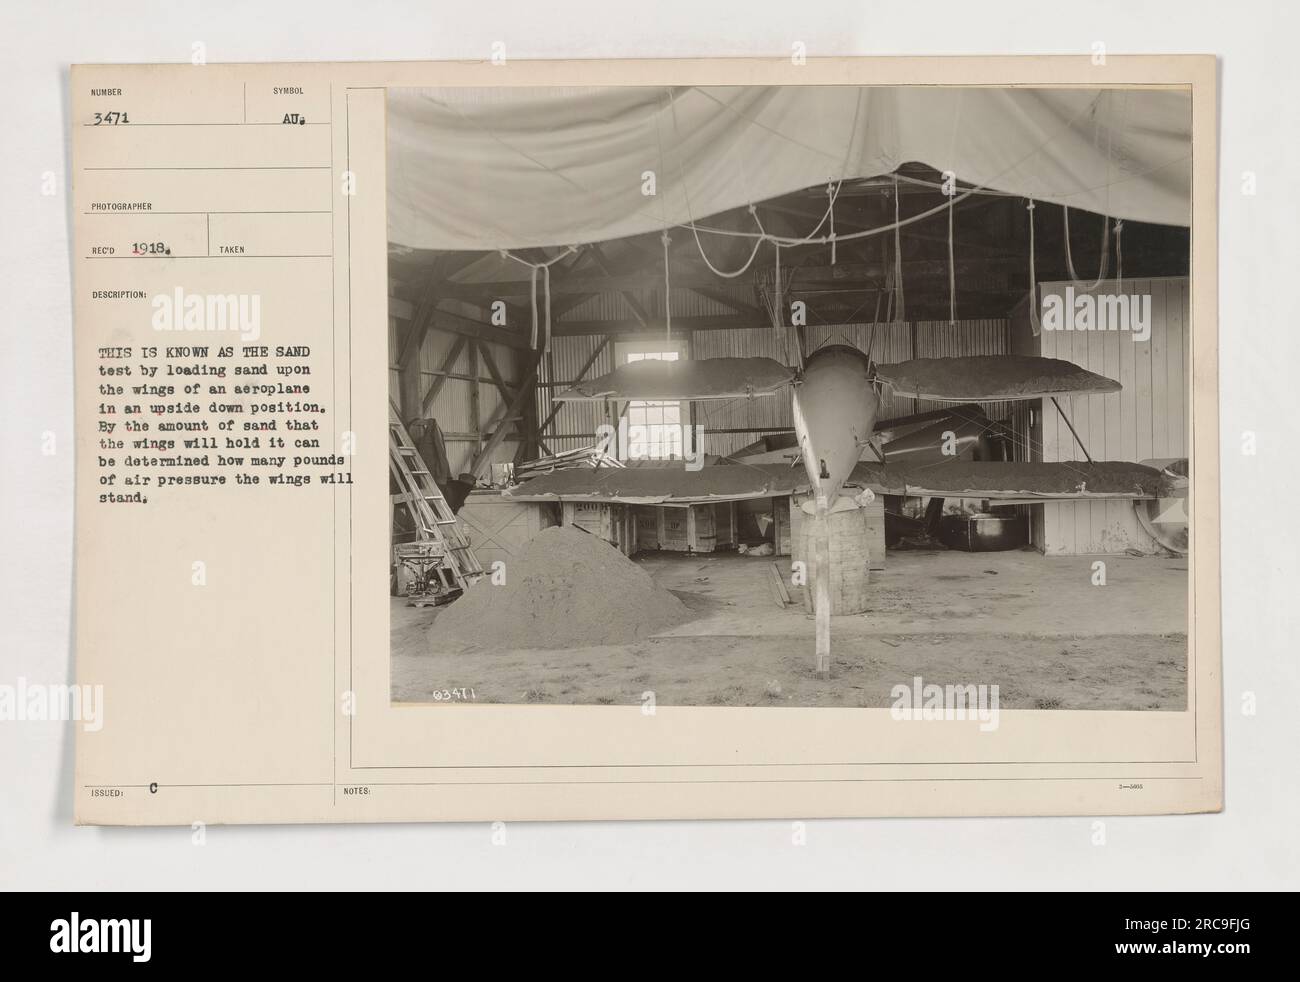 Auf diesem Foto wird während des Ersten Weltkriegs ein Sandtest in einem Flugzeug durchgeführt Die Flügel des Flugzeugs stehen auf dem Kopf, und es wird Sand auf sie geladen. Dieser Test hilft bei der Bestimmung des Luftdrucks, dem die Flügel standhalten können, basierend auf der Menge Sand, die sie halten. Stockfoto